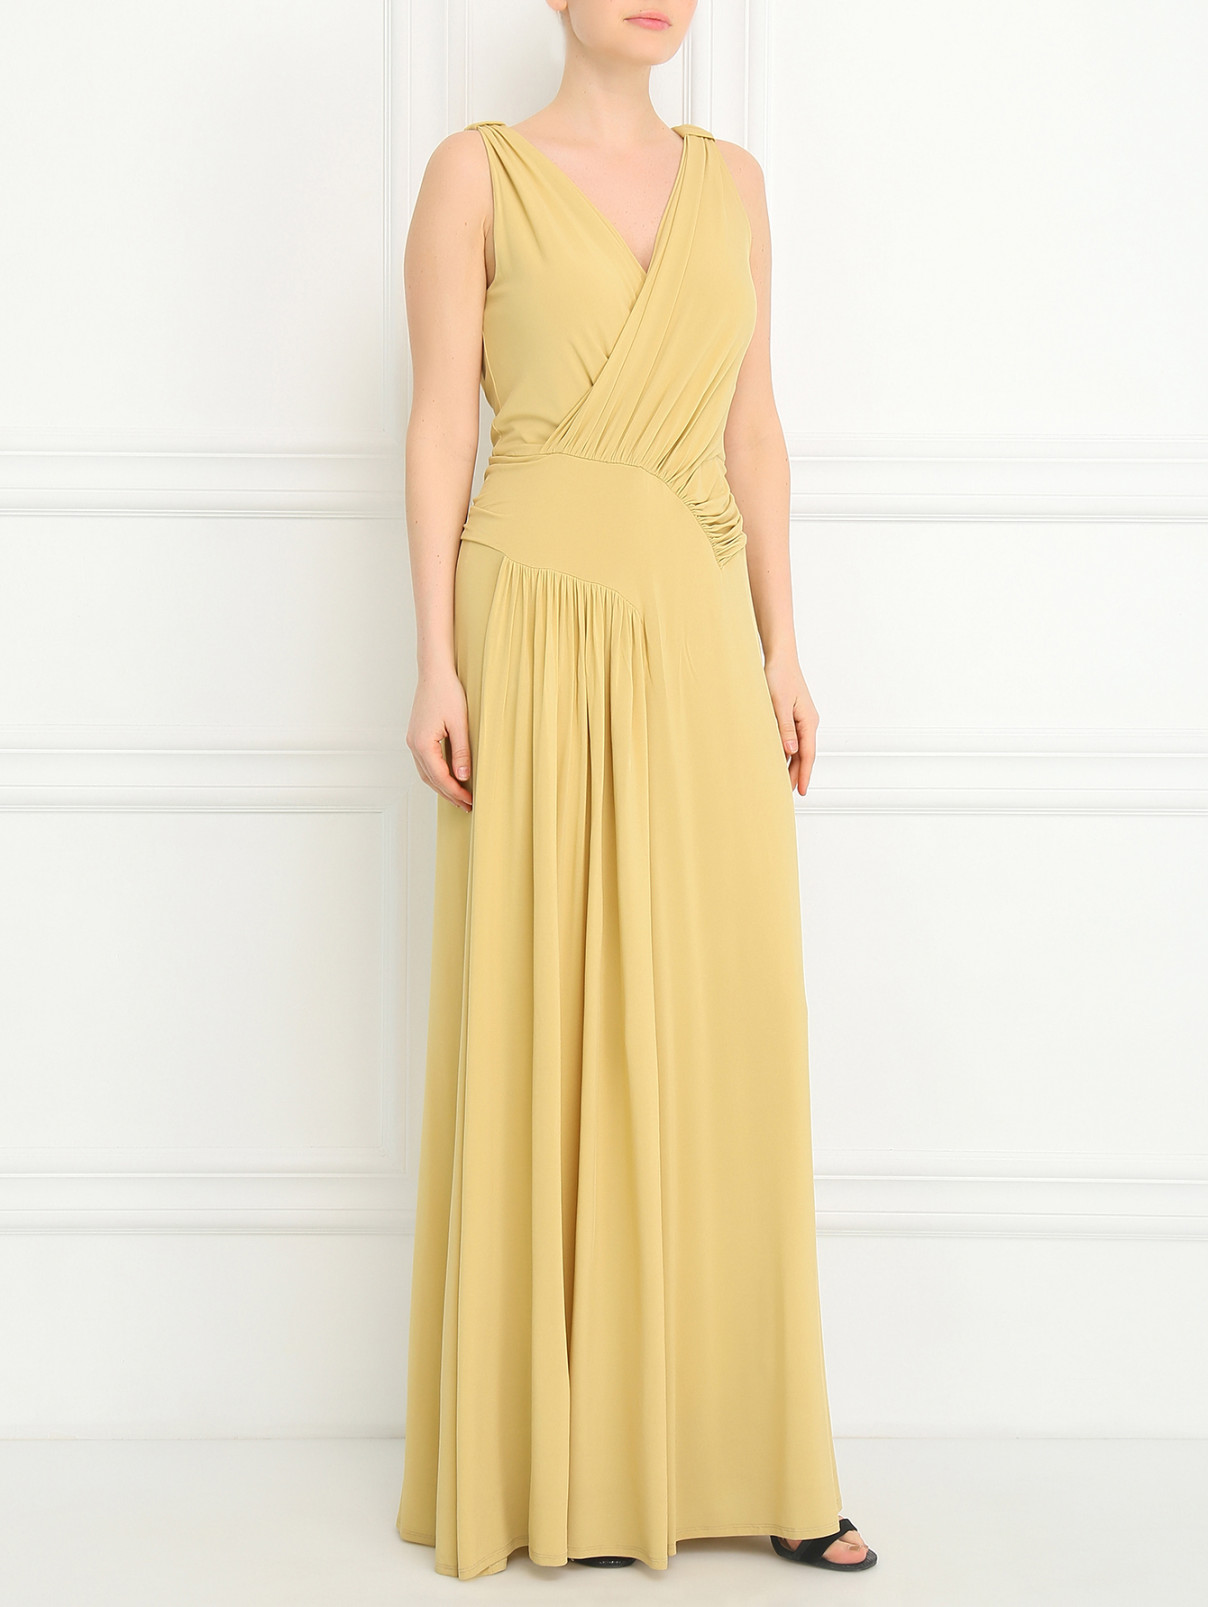 Платье-макси с драпировкой Alberta Ferretti  –  Модель Общий вид  – Цвет:  Желтый